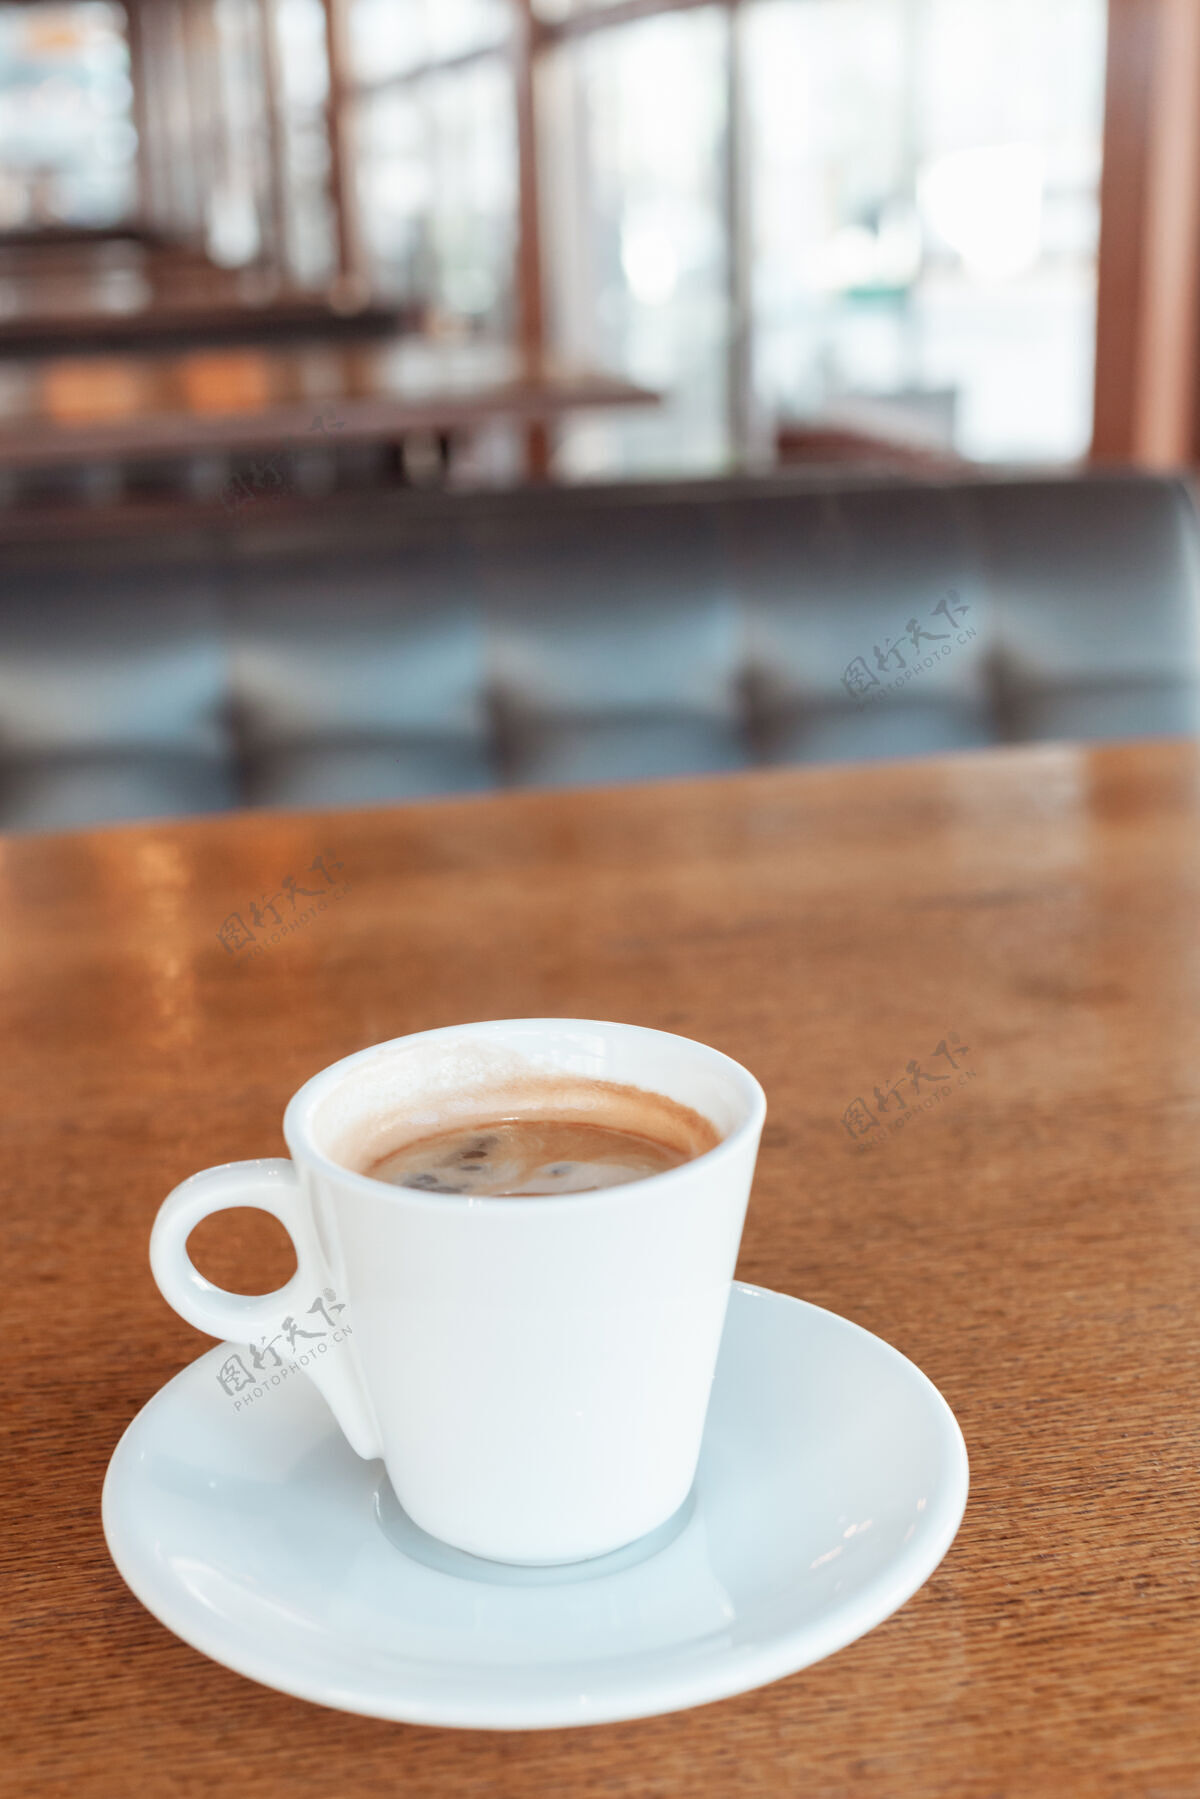 饮料咖啡馆里的咖啡放在木桌上生活早餐烟